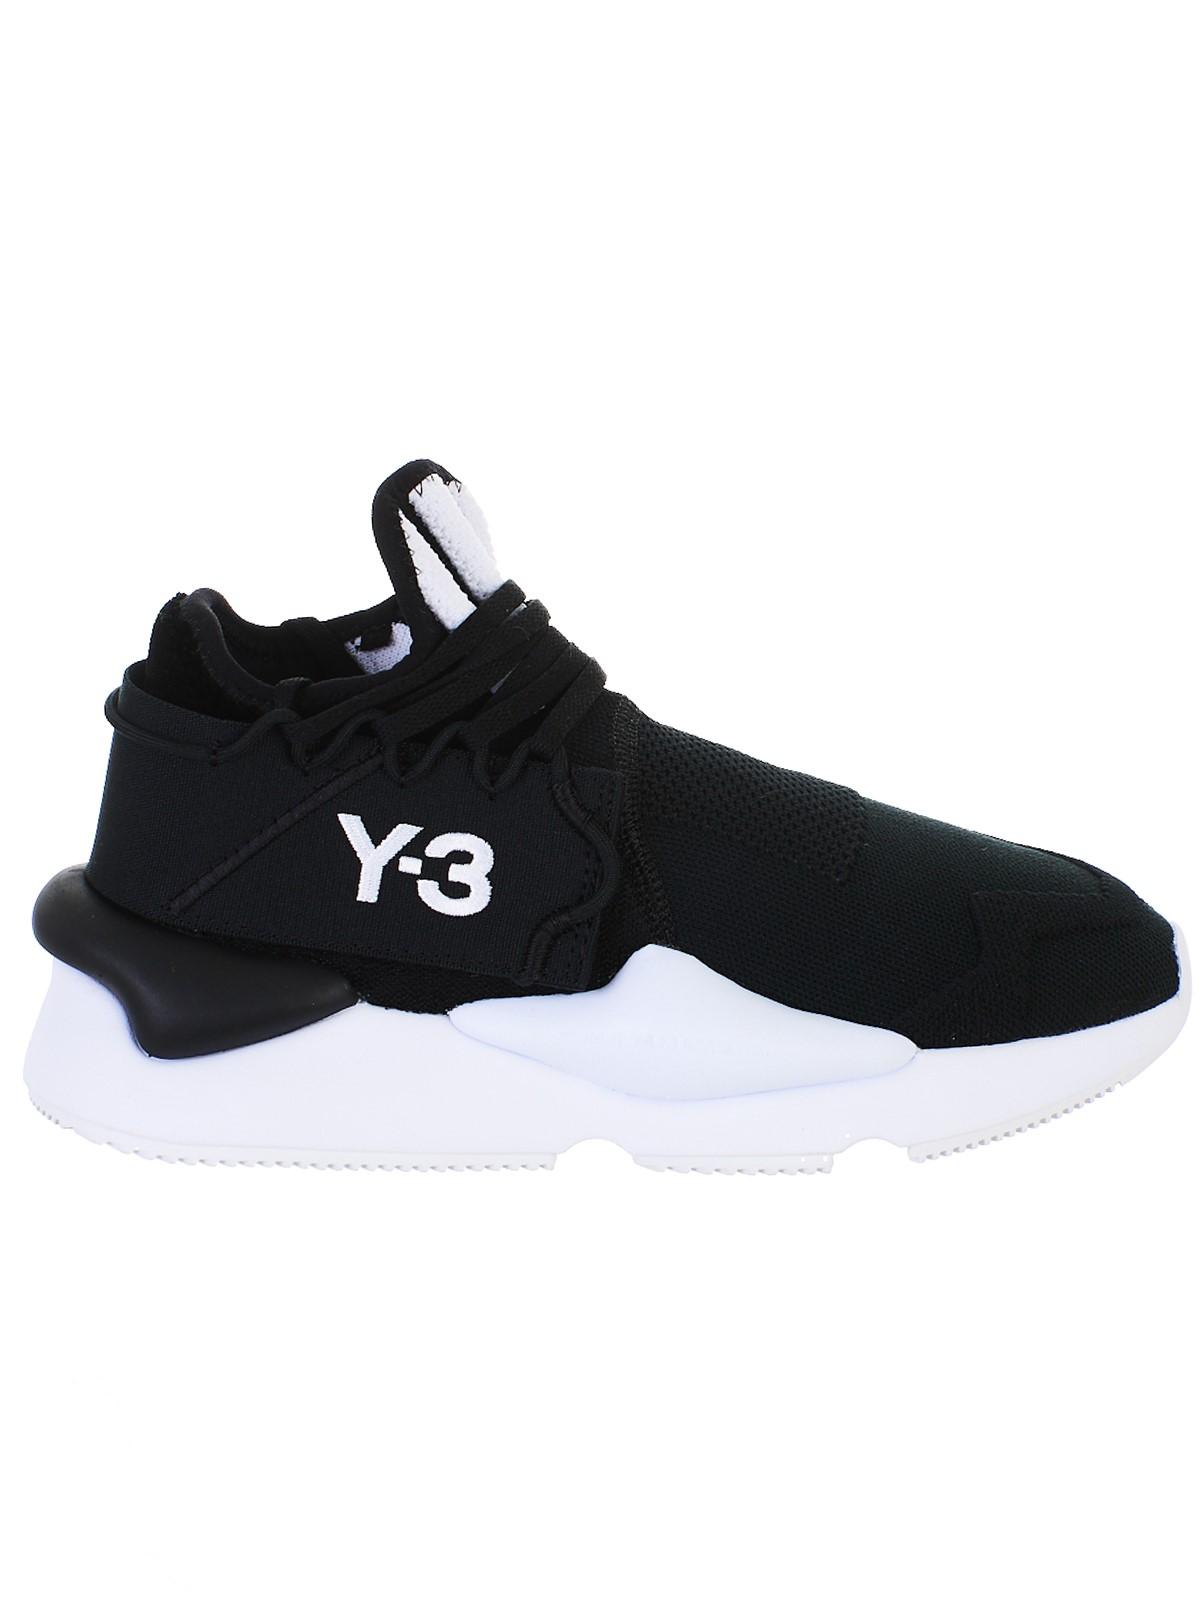 y3 shoes kaiwa